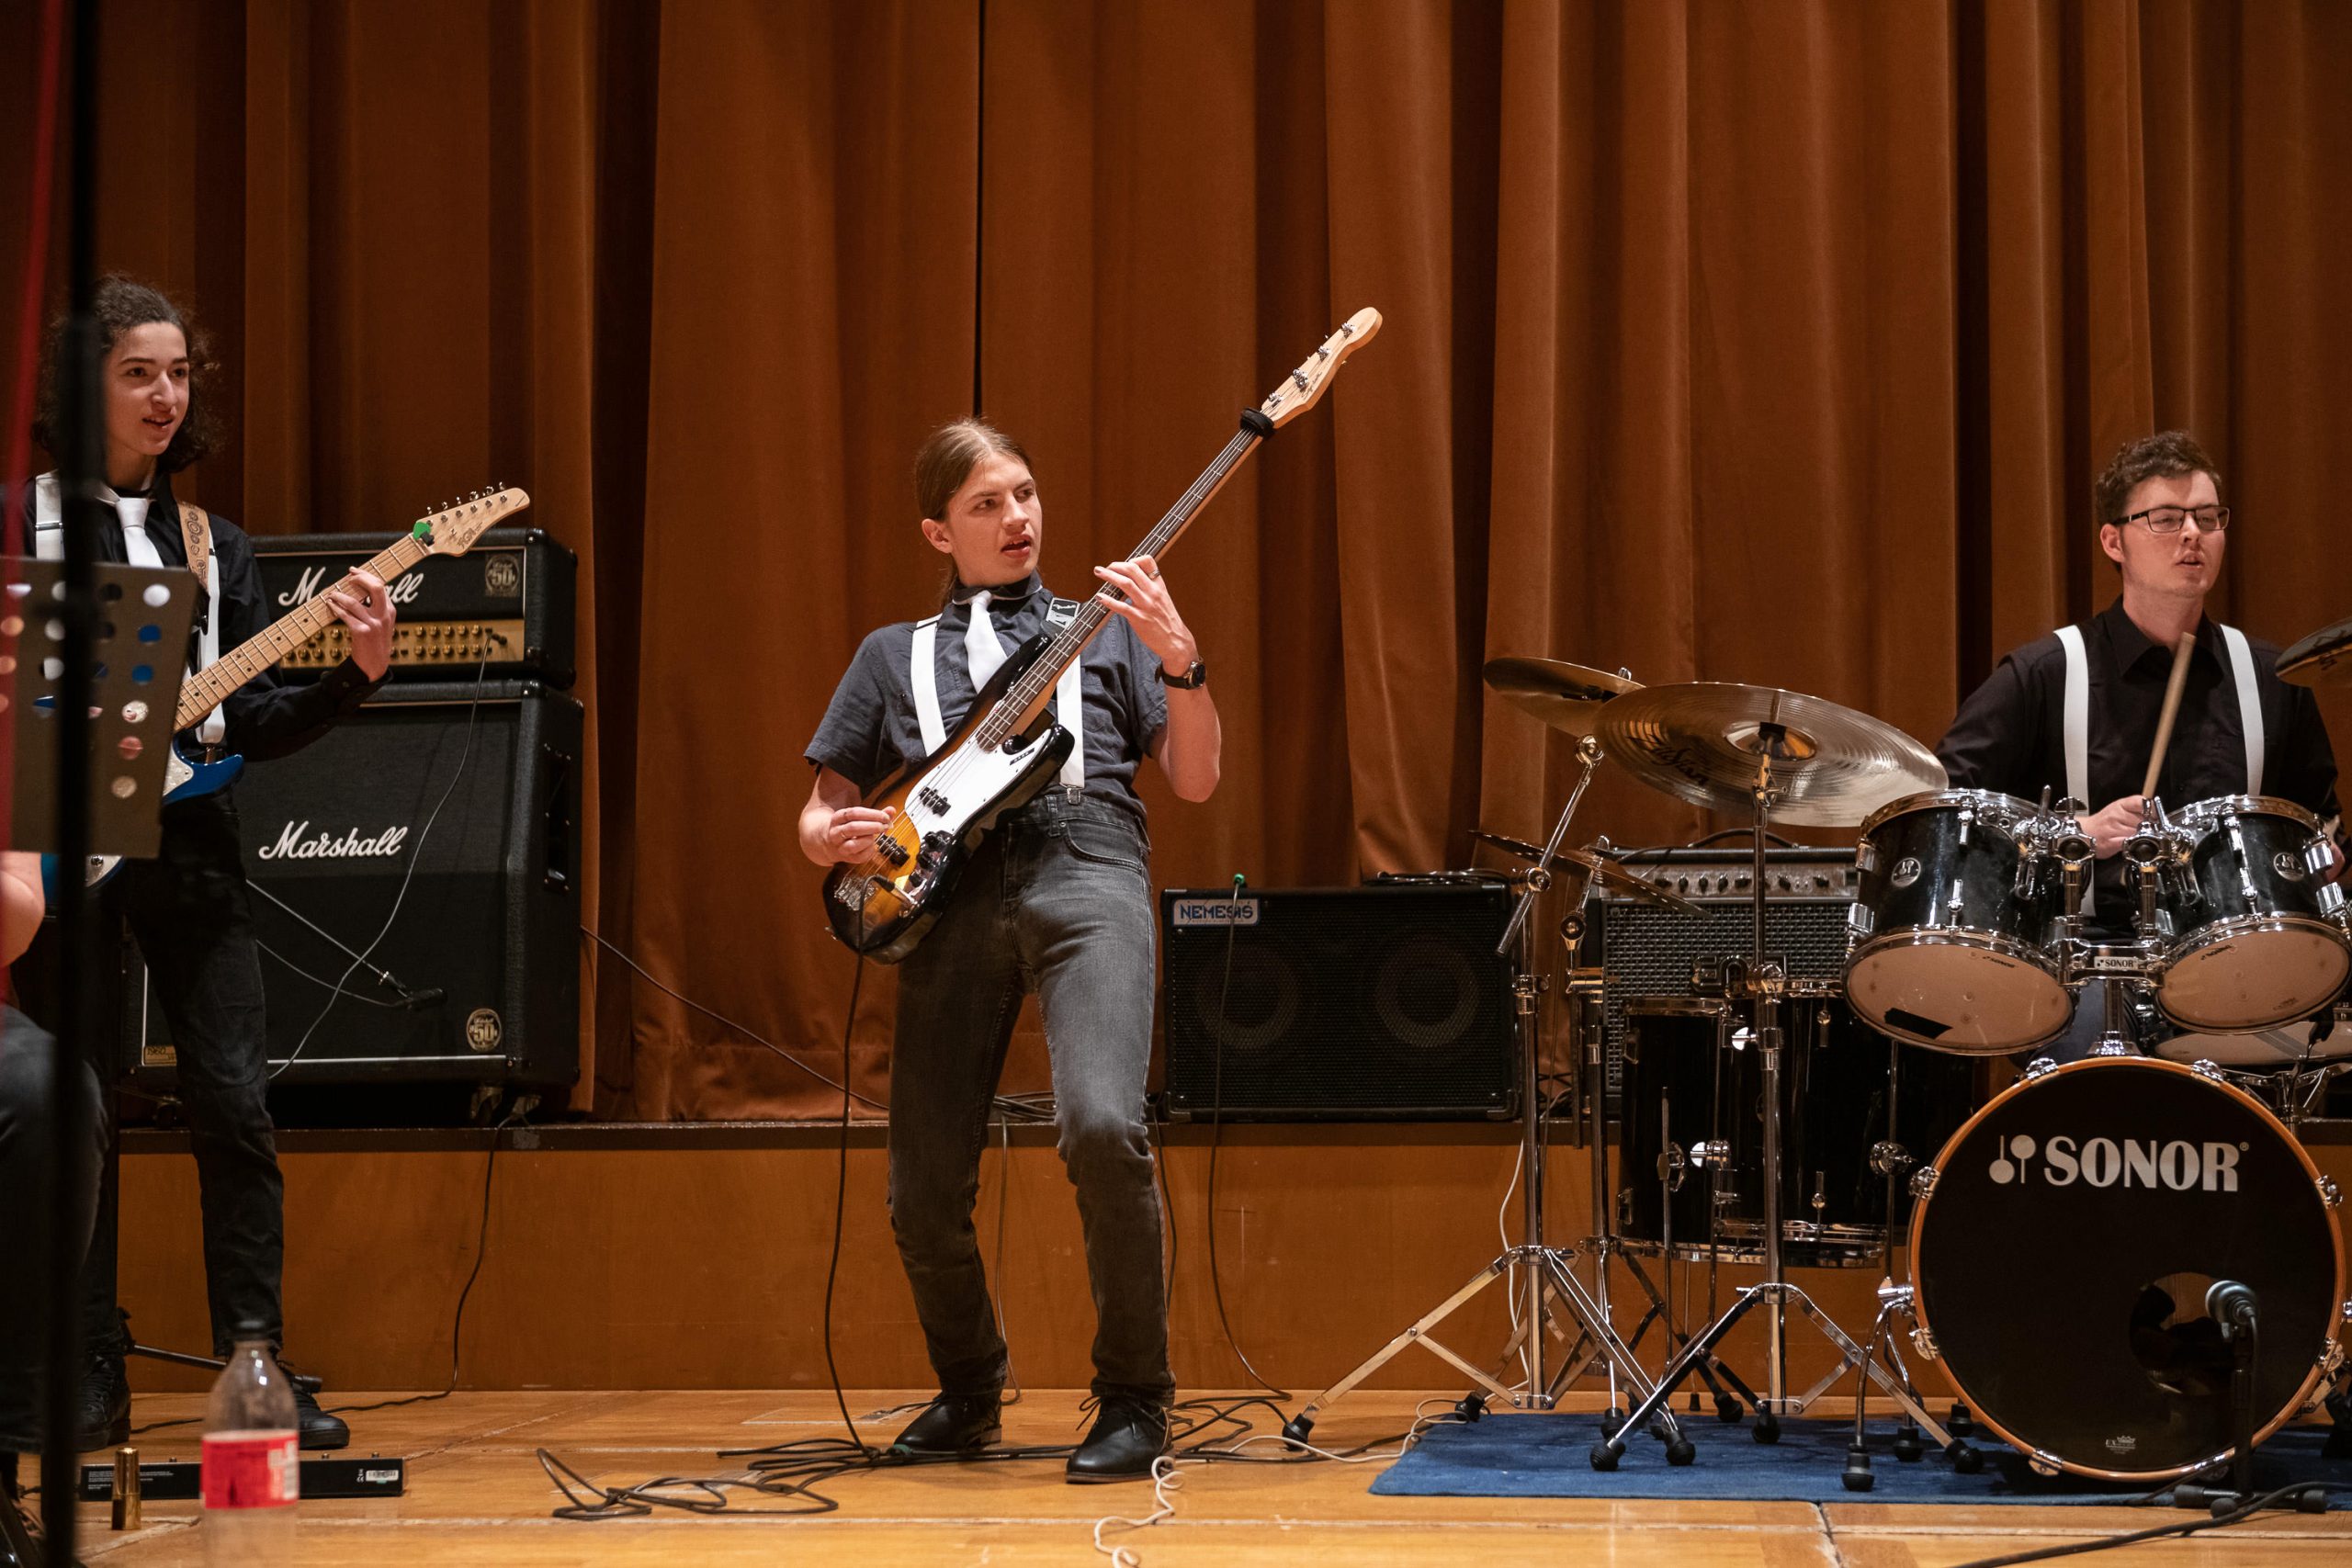 ein Jugendlicher spielt E-Bass, links daneben Gitarre, rechts Schlagzeug